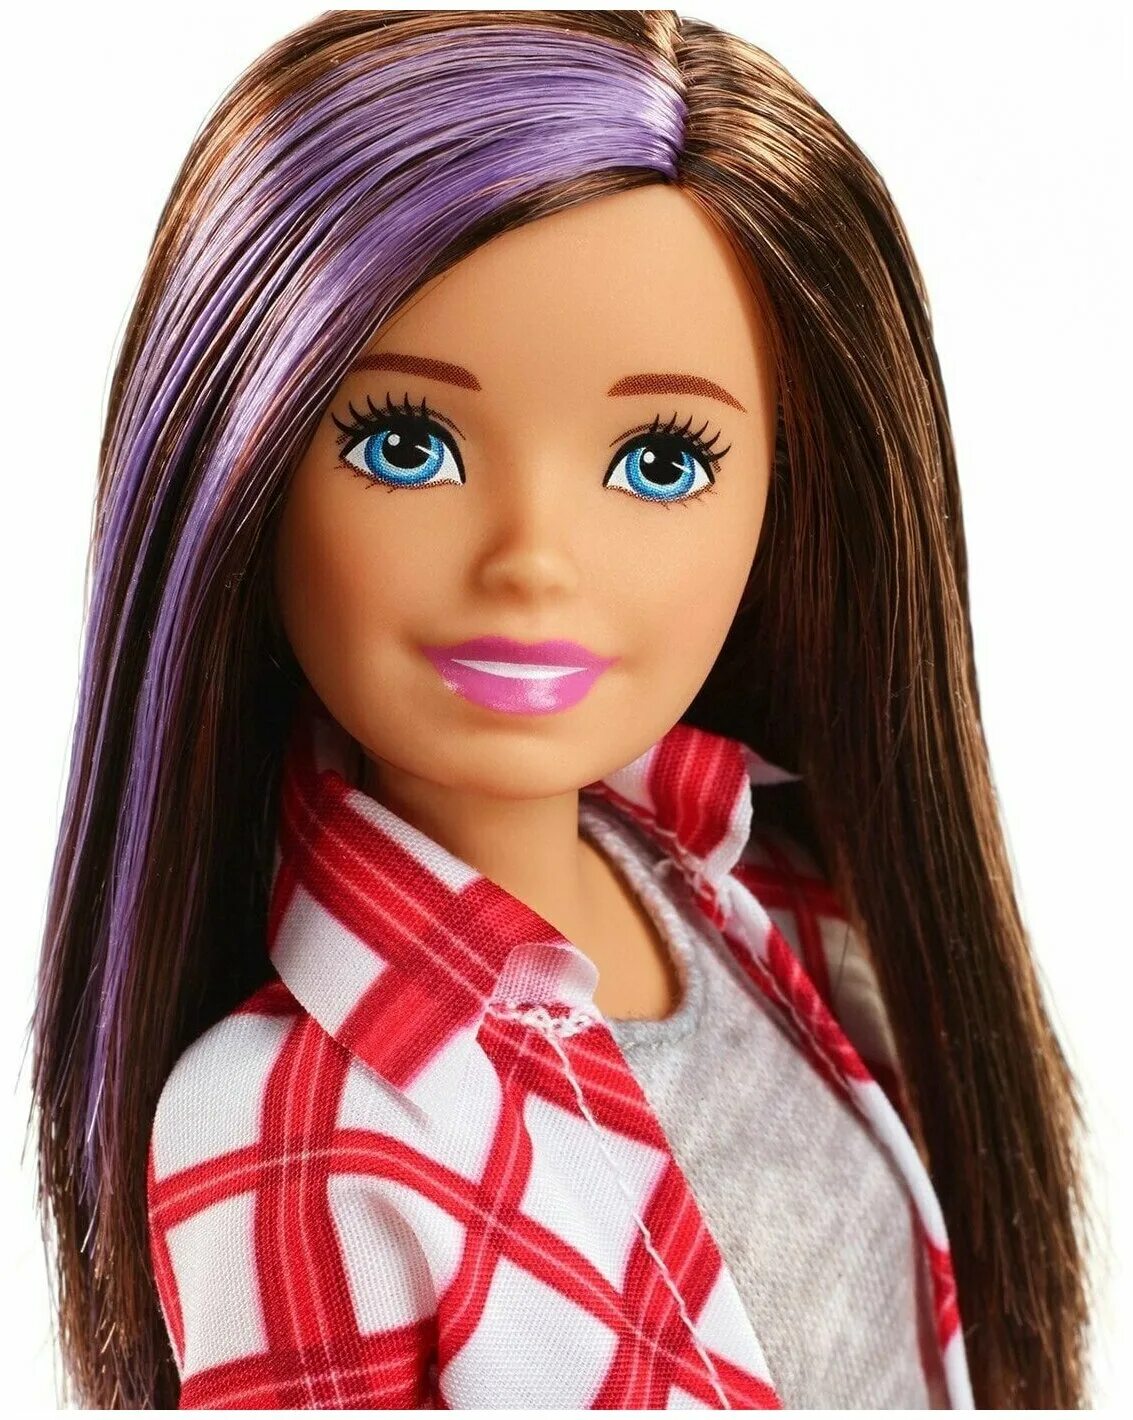 Заказать куколки. Кукла Barbie Скиппер. Кукла Барби путешествие Скиппер. Кукла Скиппер путешественница. Barbie Dreamhouse Скиппер.